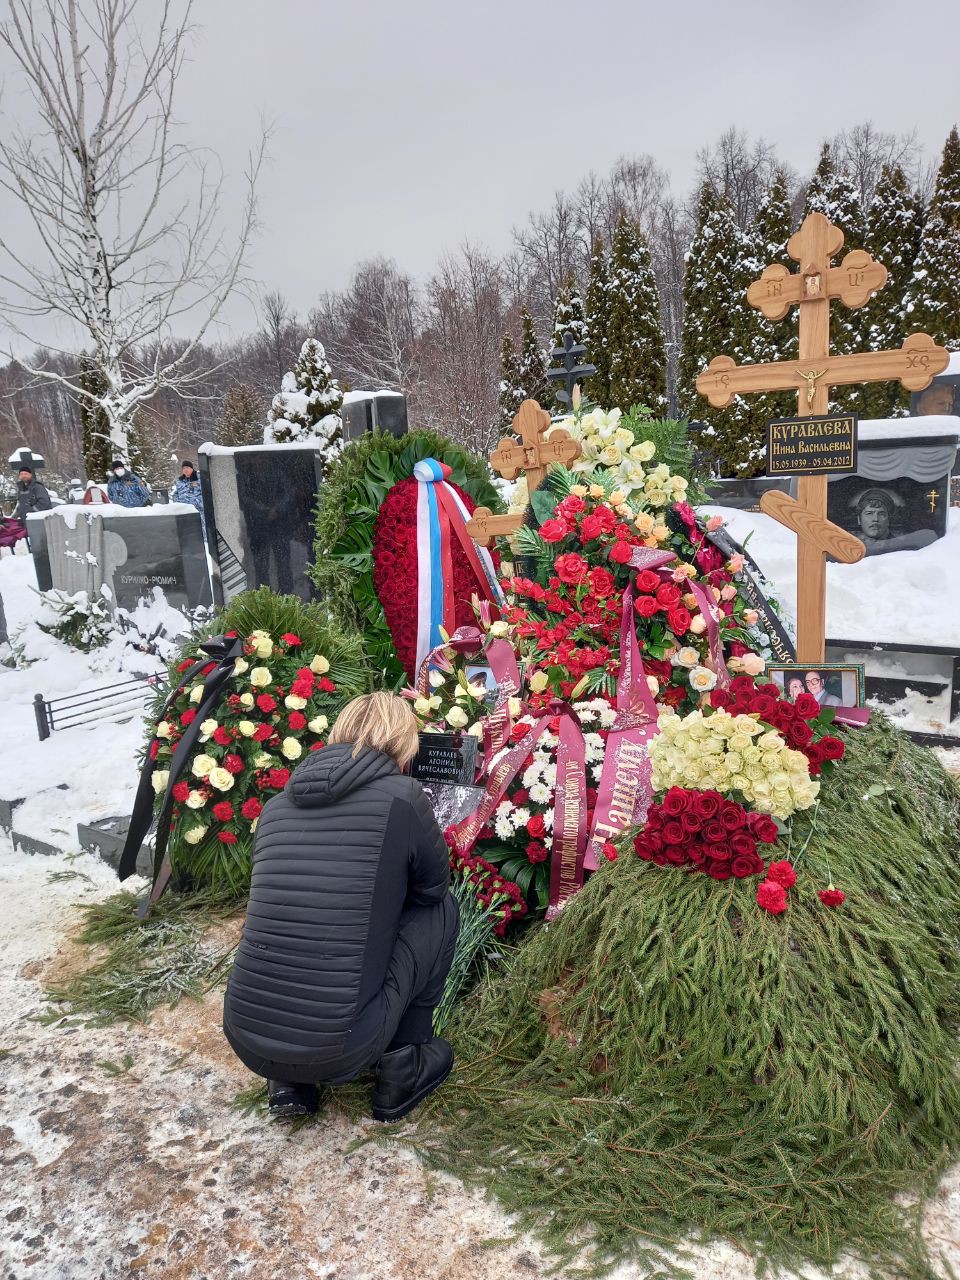 Харатьян у могилы Куравлева заявил, что вся жизнь России связана с актером